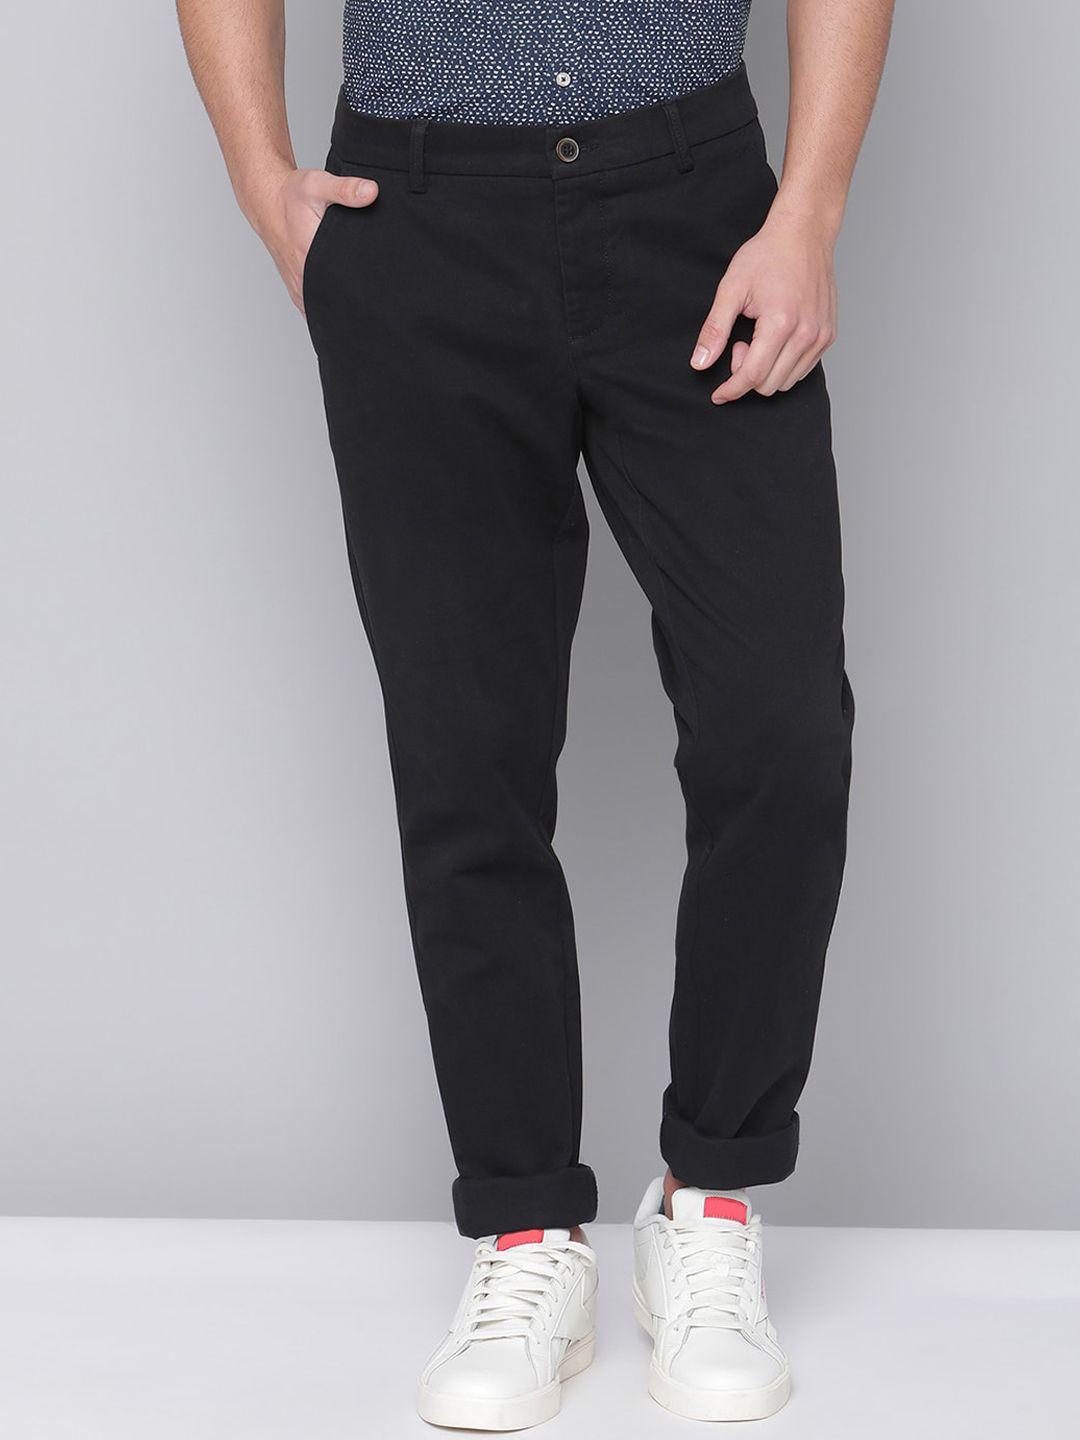 bruun & stengade men black slim fit chinos trousers